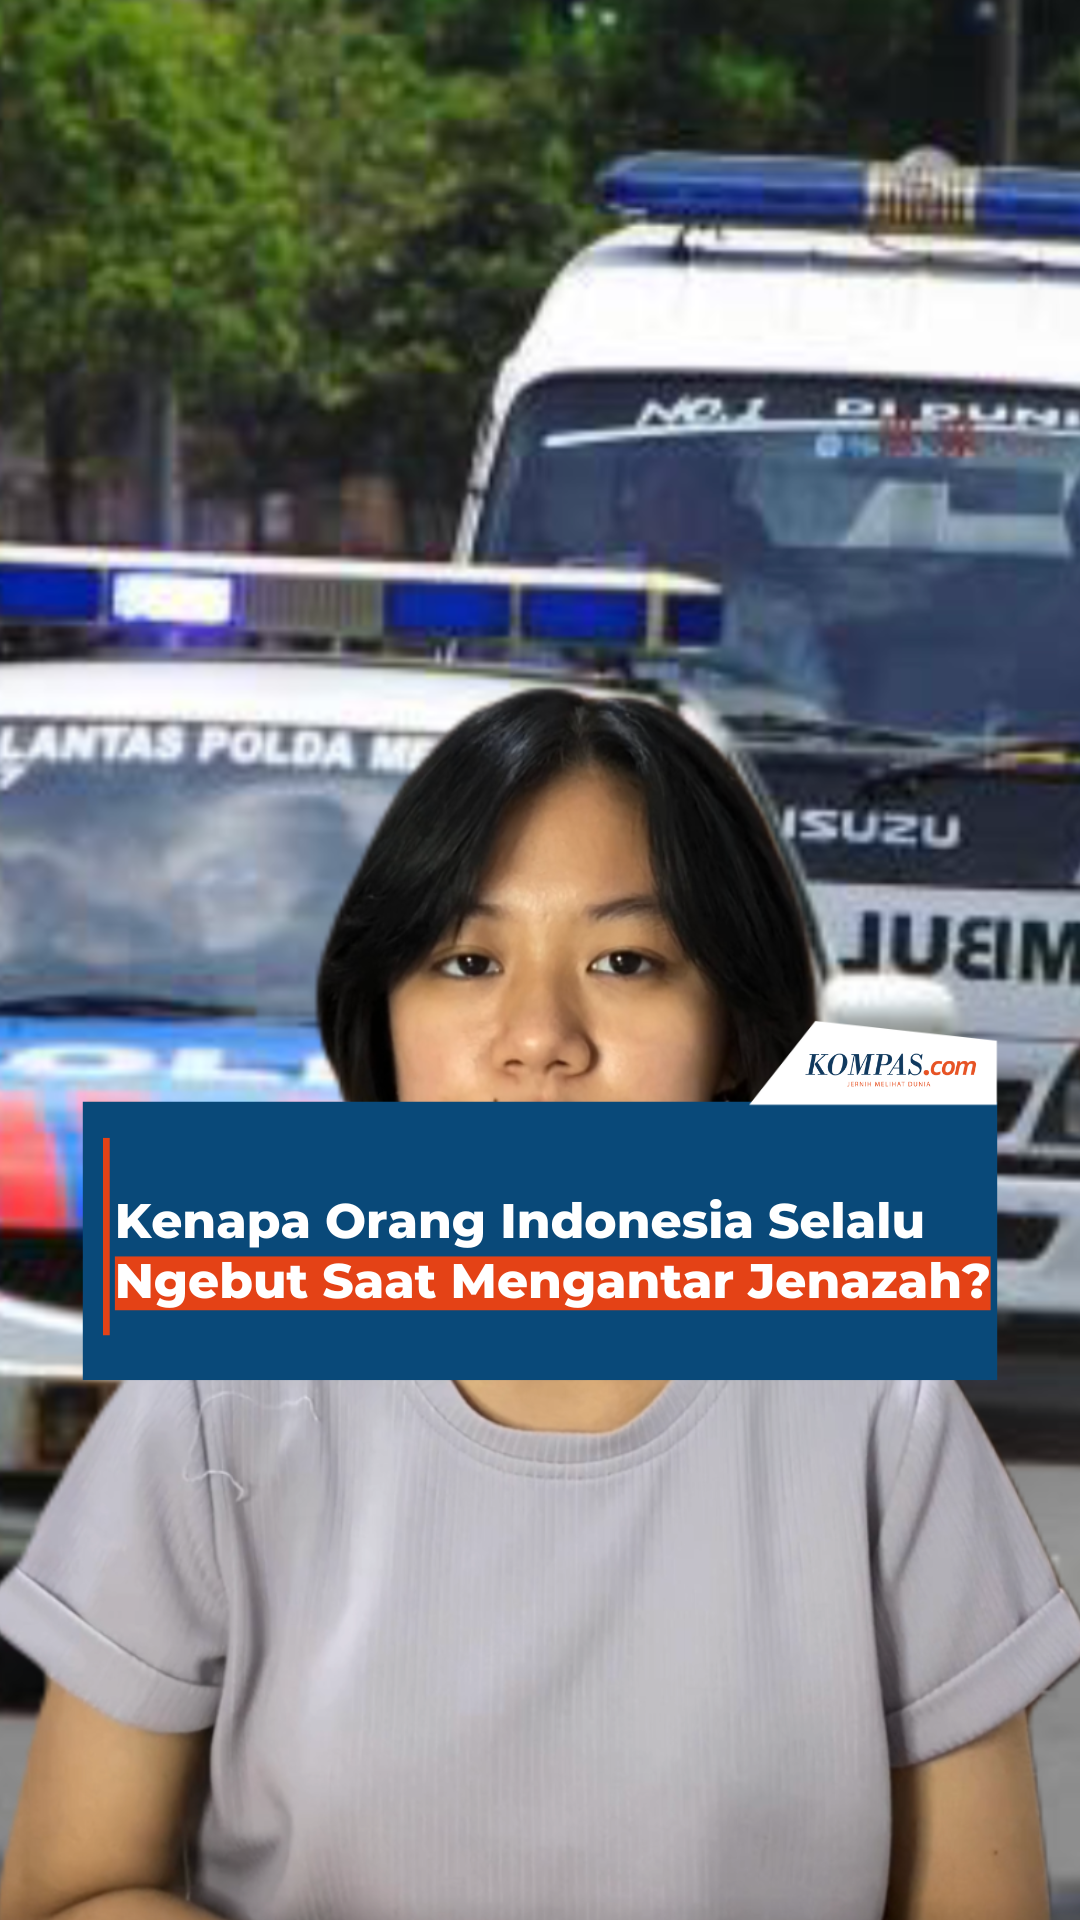 Kenapa Orang Indonesia Selalu Ngebut Saat Mengantar Jenazah?